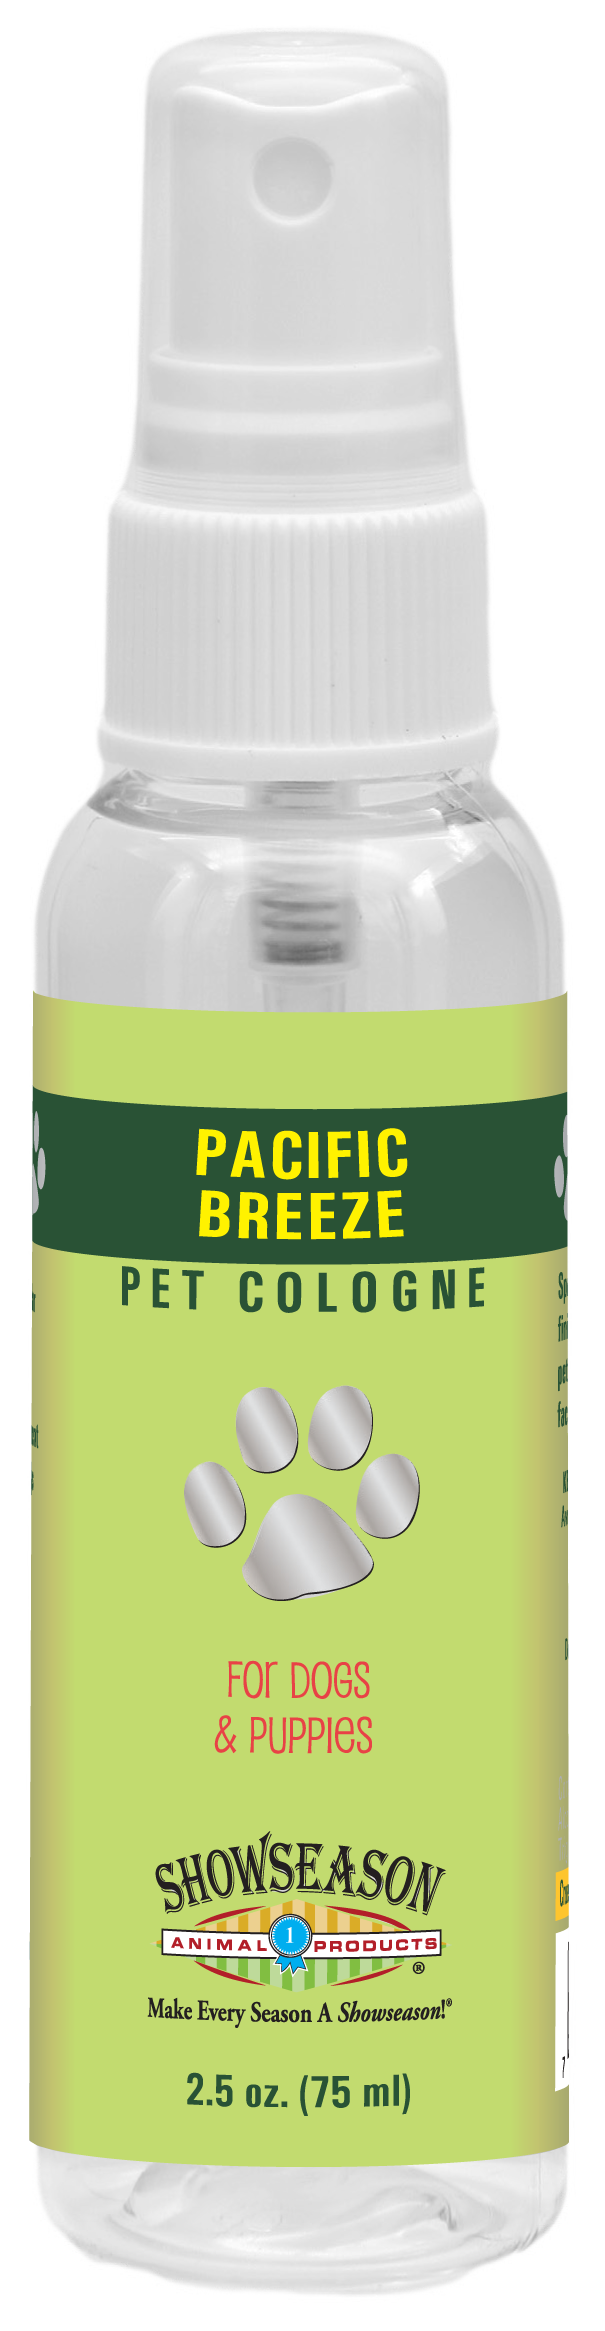 Pacific Breeze Pet Cologne | Showseason®